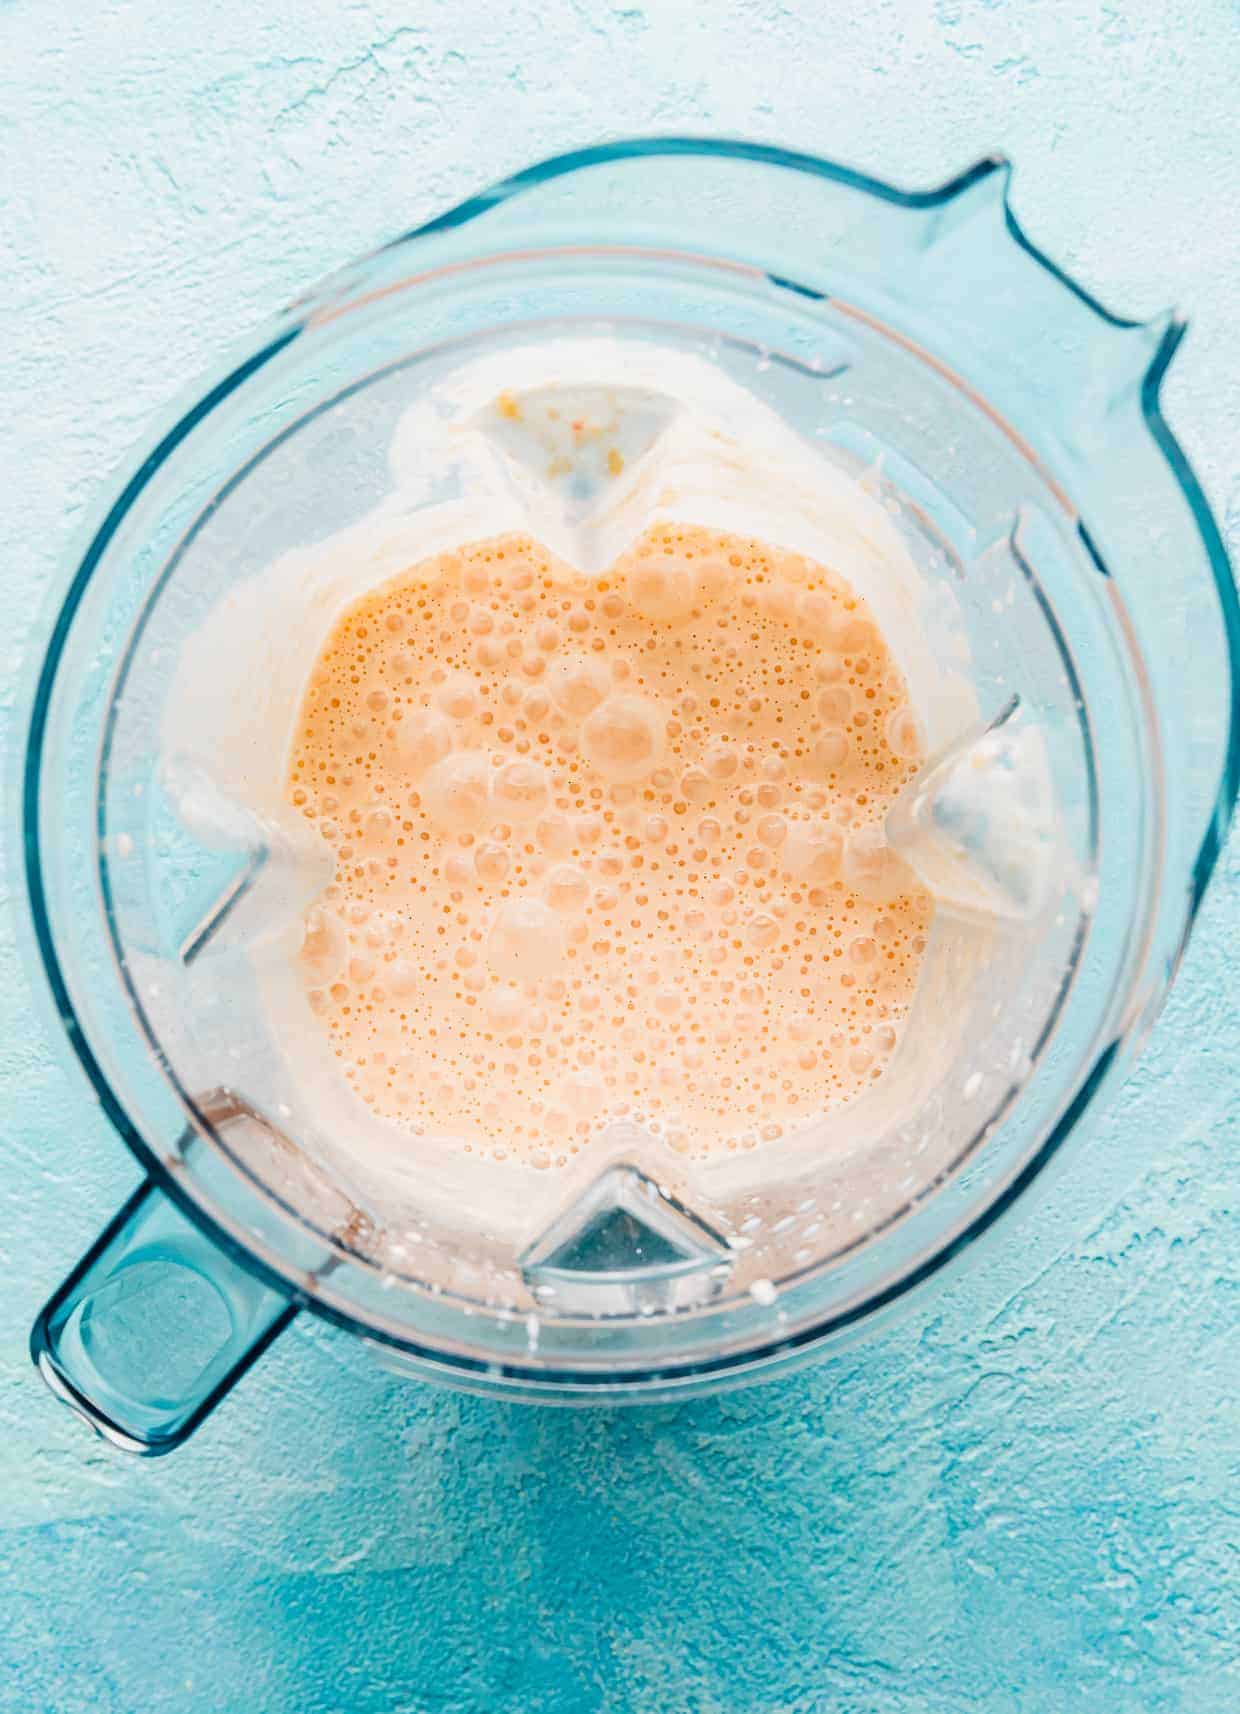 A blended peach milkshake in a blender.